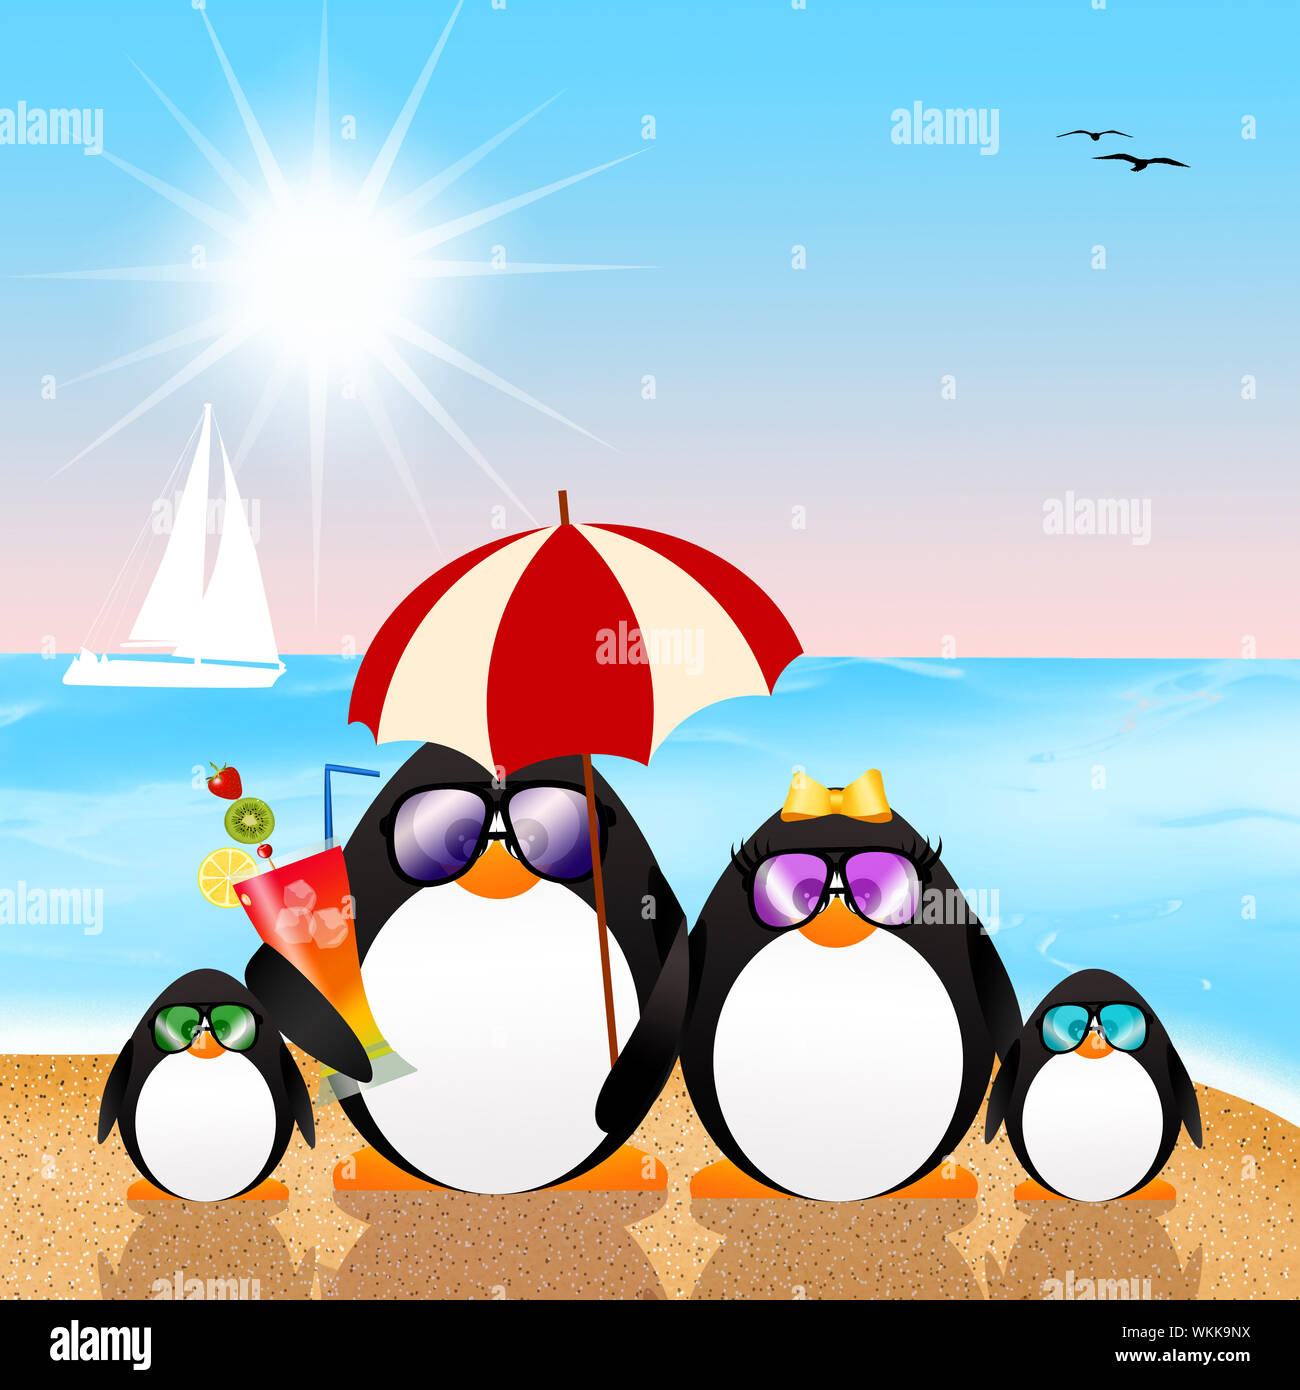 Cartoon Penguins Stock Photos & Cartoon Penguins Stock Images - Alamy